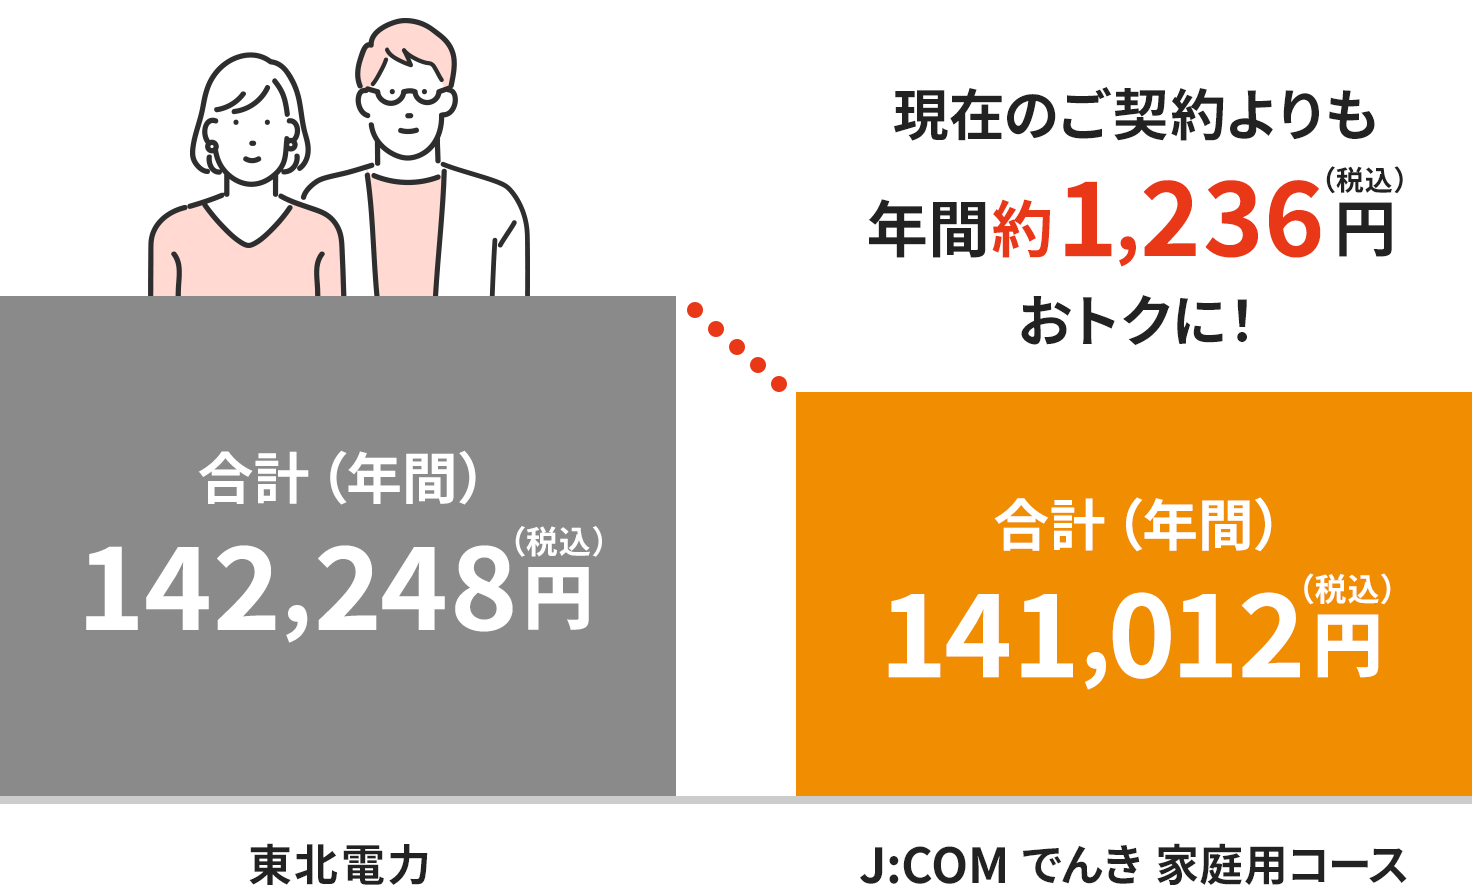 Hình ảnh phí tại khu vực Điện lực Tohoku (dành cho hộ gia đình hai người)